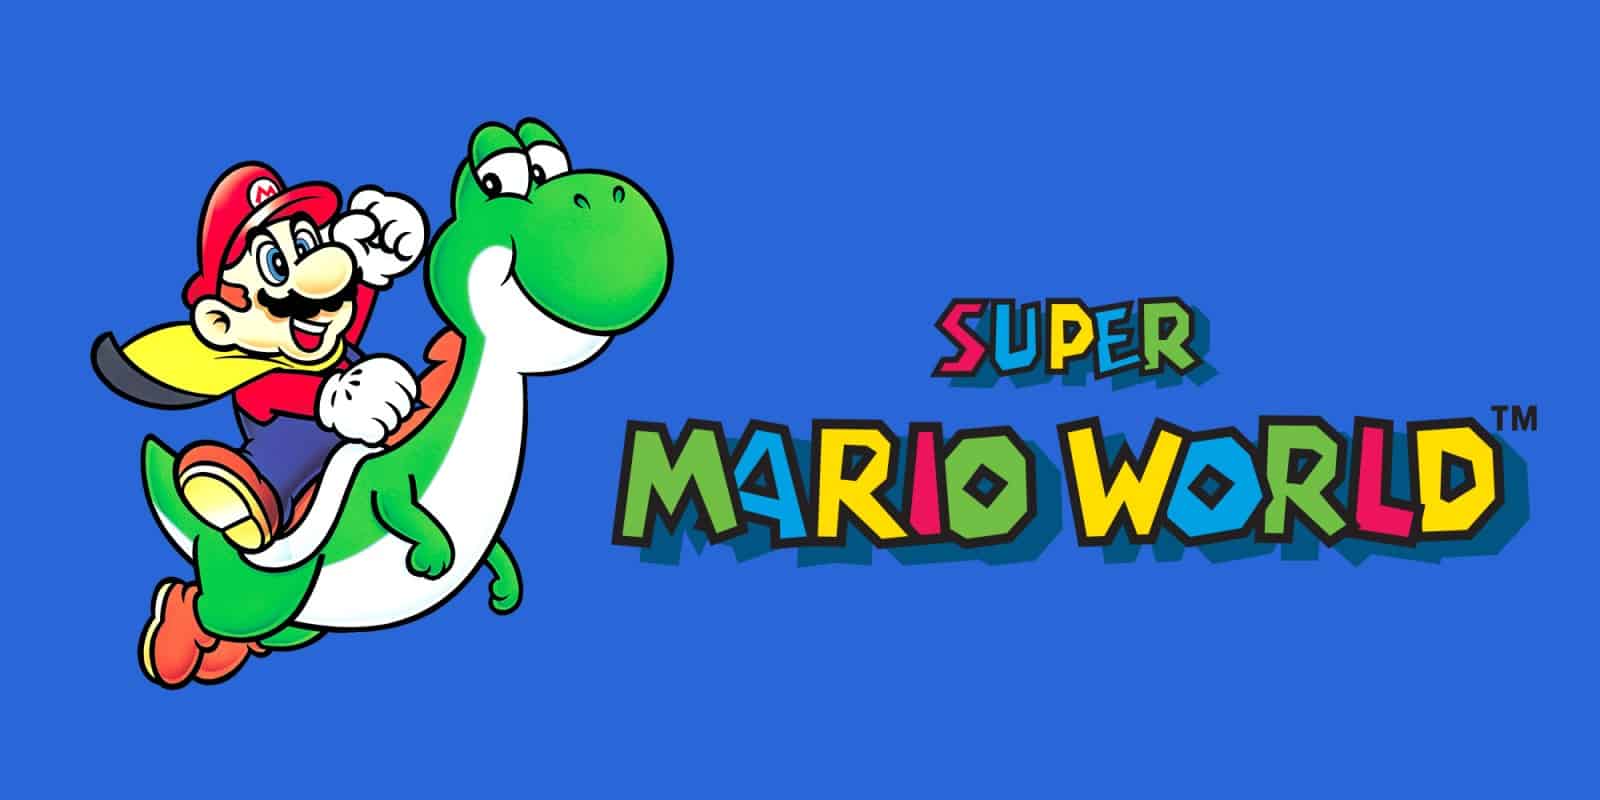 Review – Mega Drive) Super Mario World